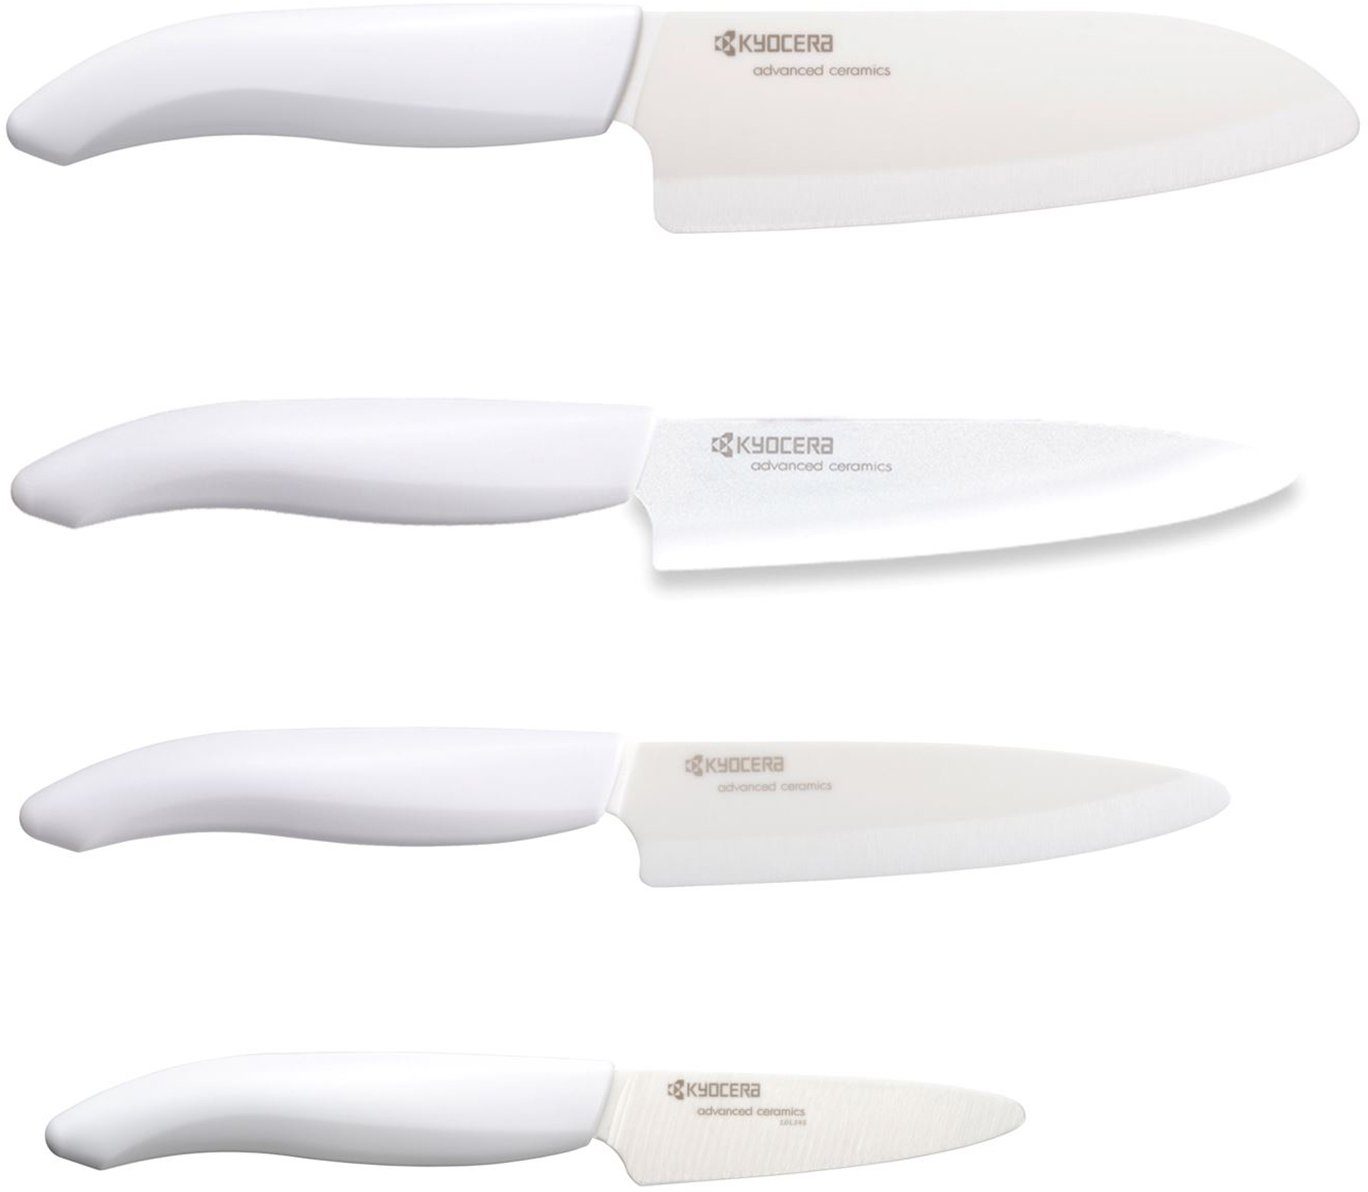 4 Bambus-Messerblock 3in1 inklusive GEN white (5tlg), Aufstellen Aufhängen zum und - Messer, Schublade, geegnet KYOCERA Messerblock für